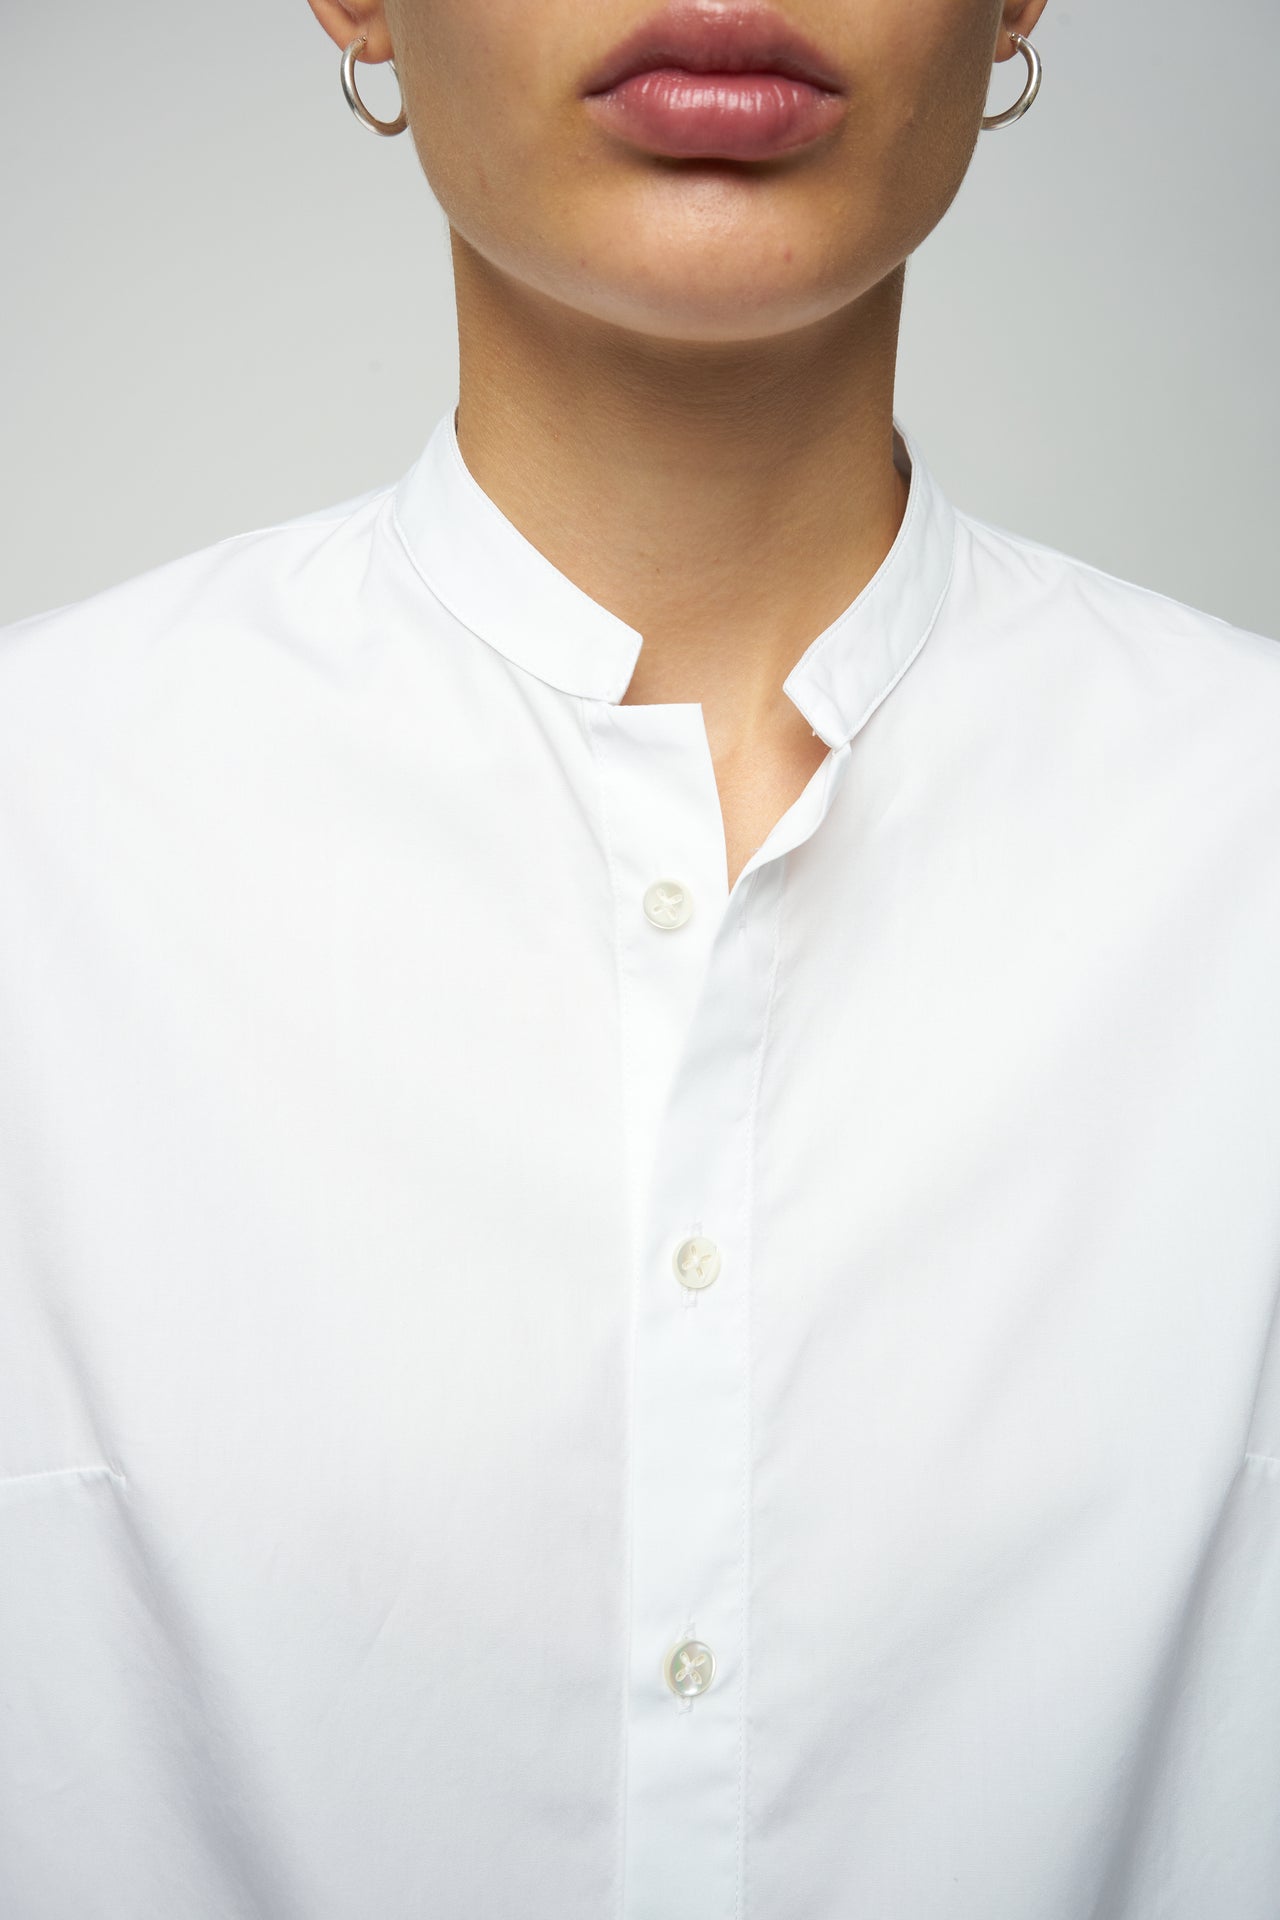 かさばる袖が付いたリラックス感のあるホワイトのオーガニック ポプリン シャツ